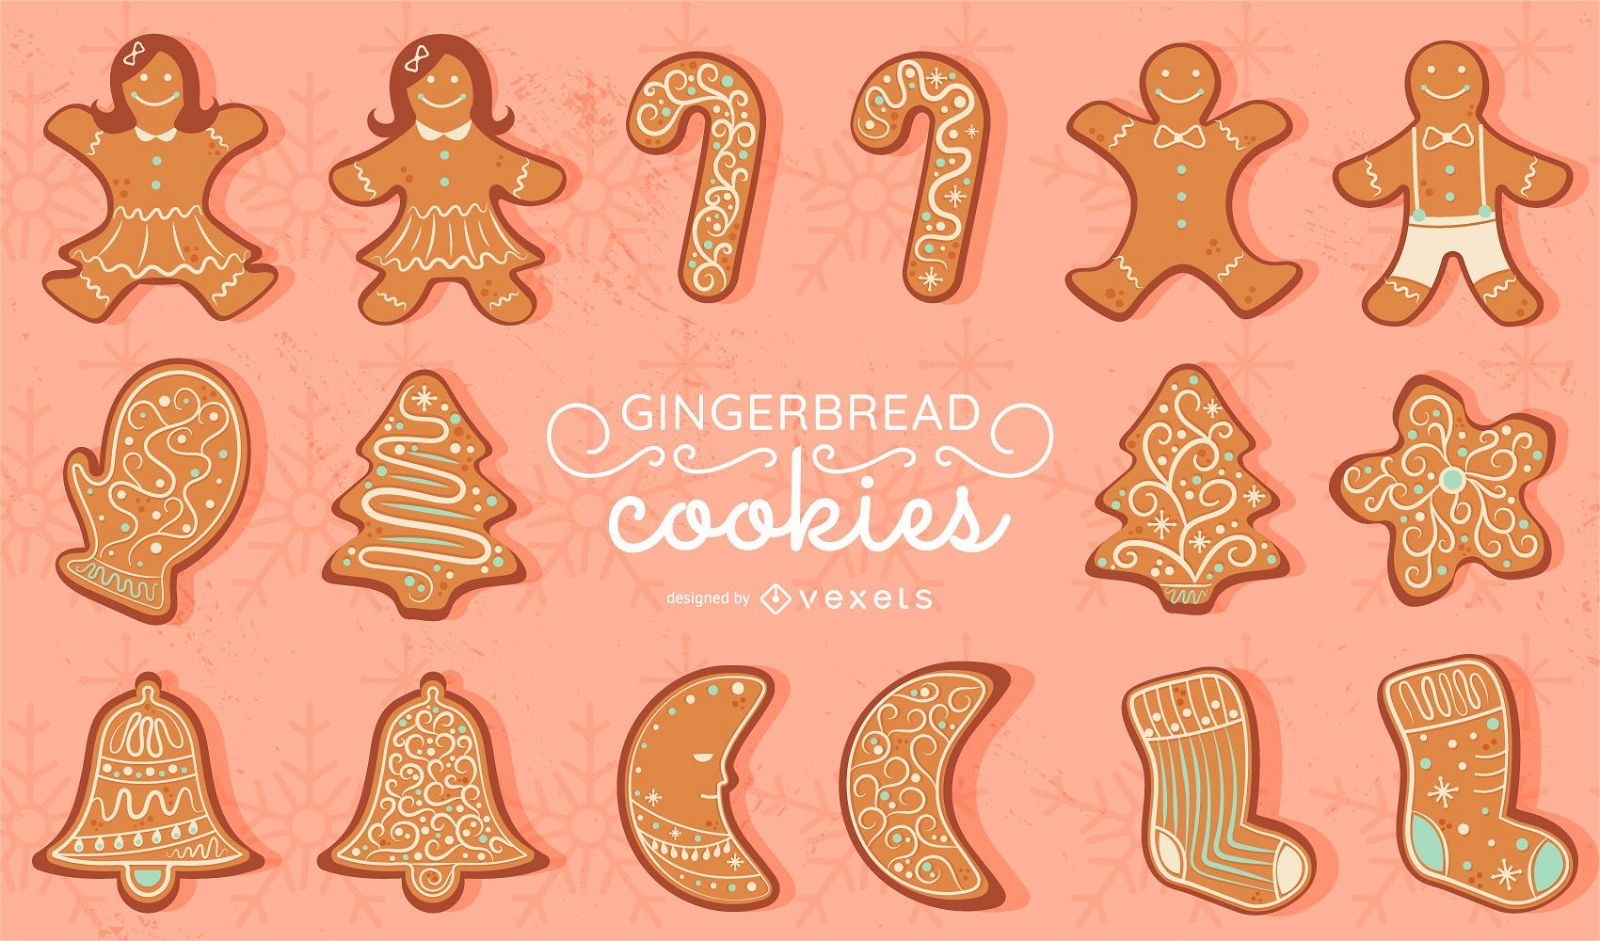 Gingerbread cookies vector set